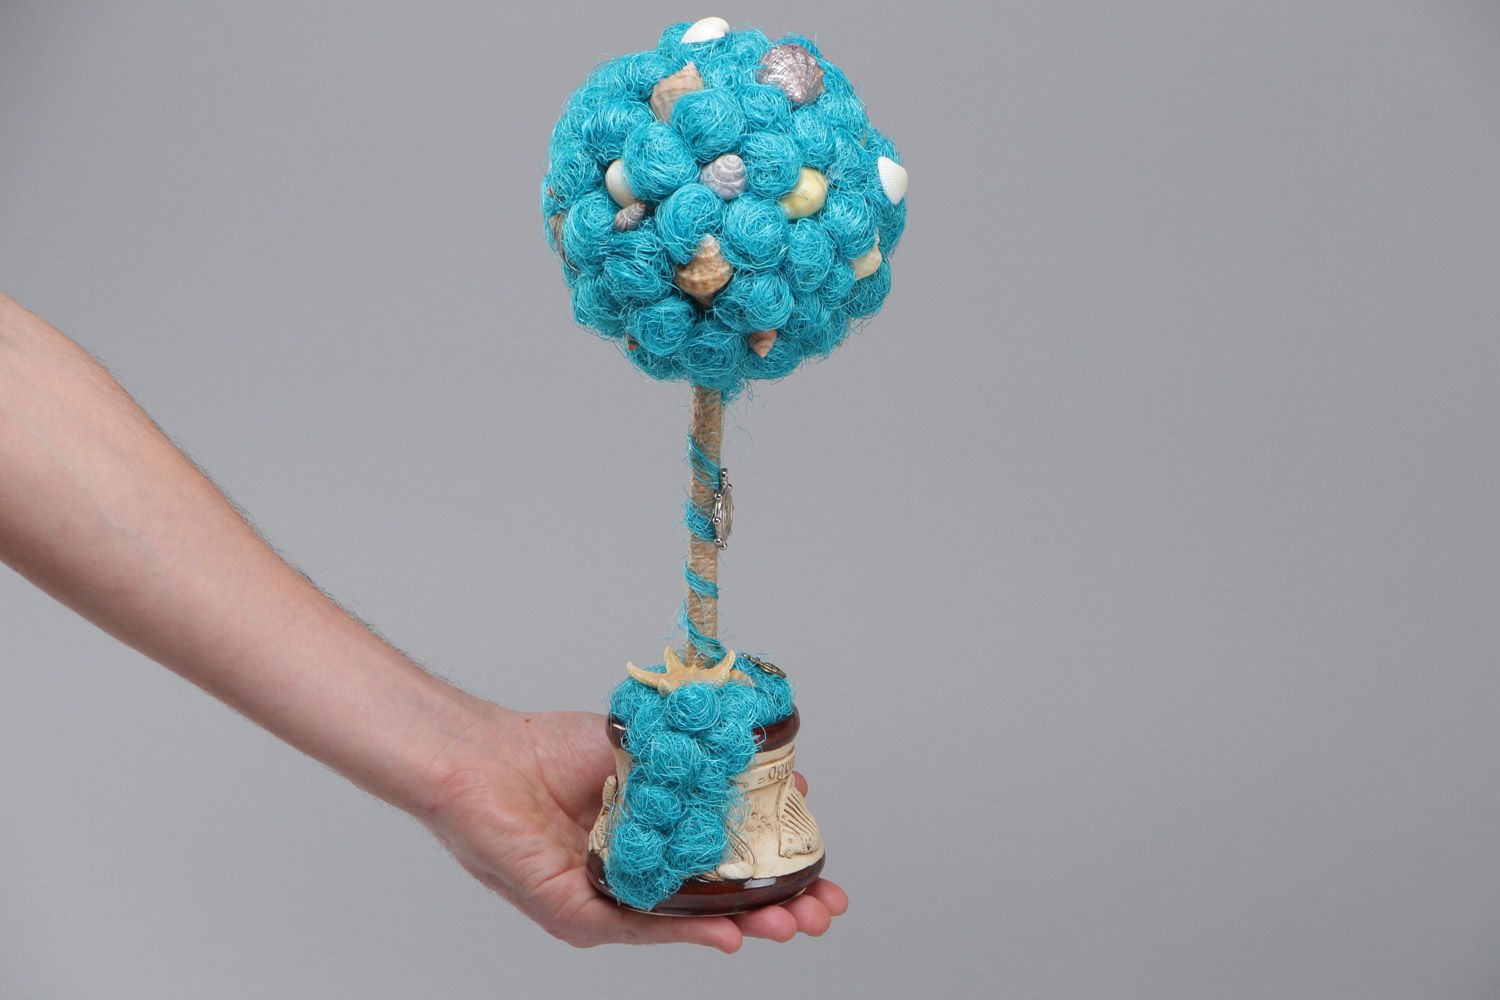 Дерево из натуральных материалов сизаля и ракушек ручной работы в голубых тонах фото 5